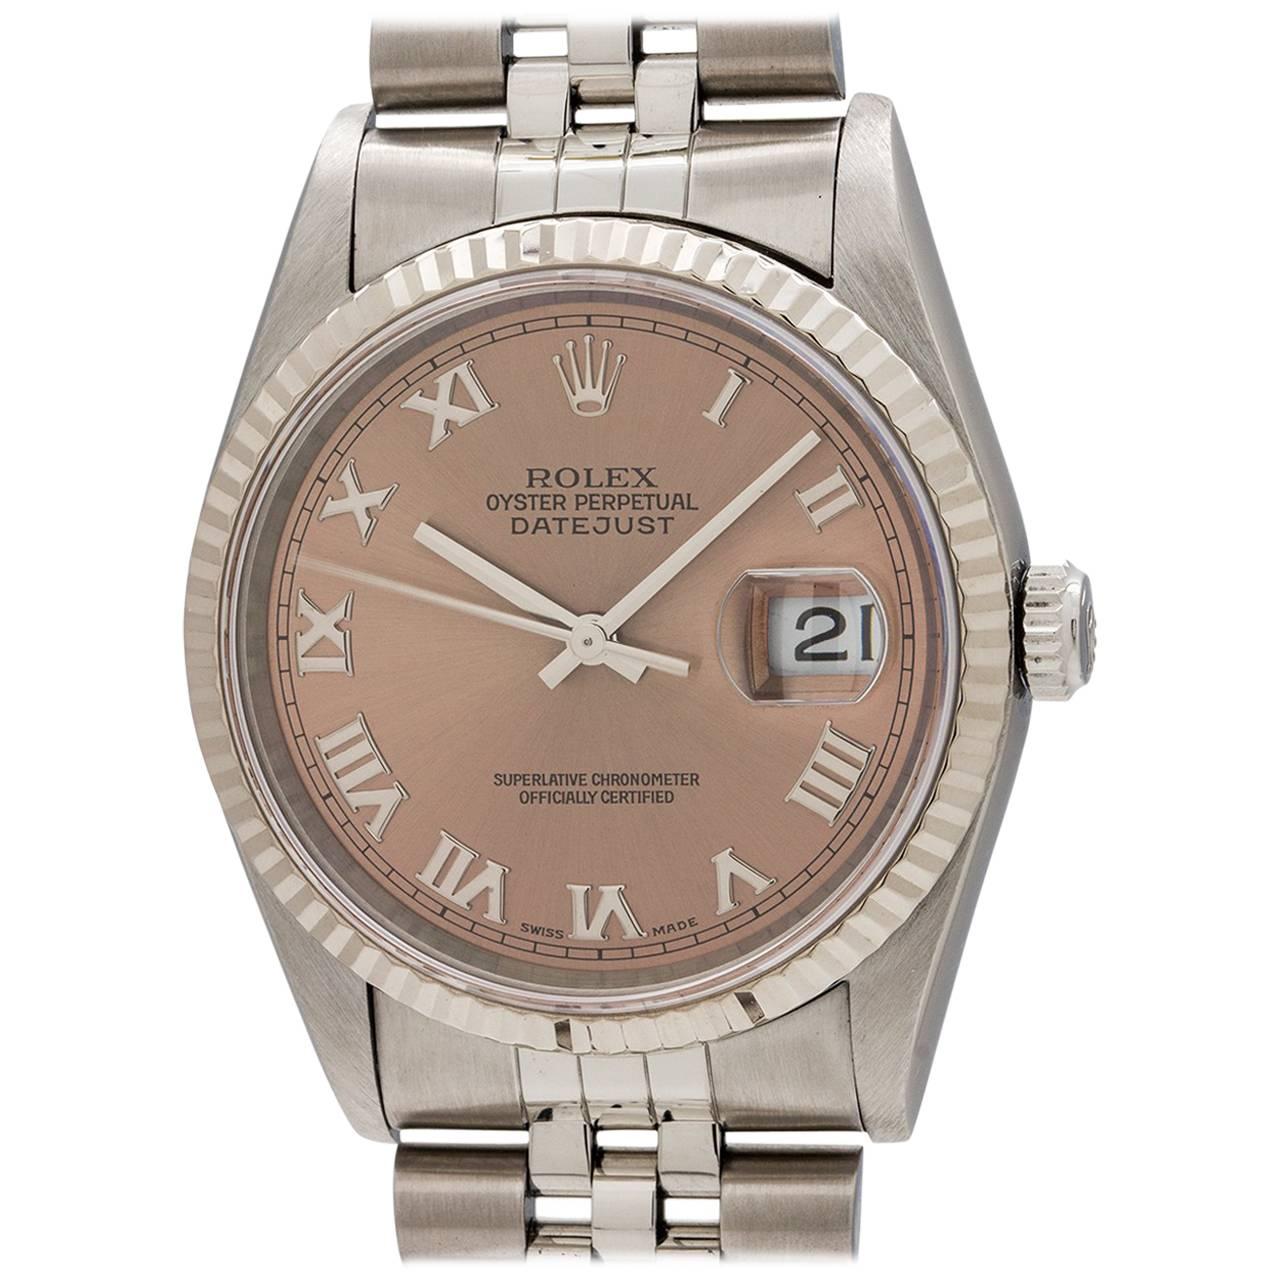 Rolex Yellow Gold Stainless Steel Datejust Wristwatch Ref 16234, circa 1997